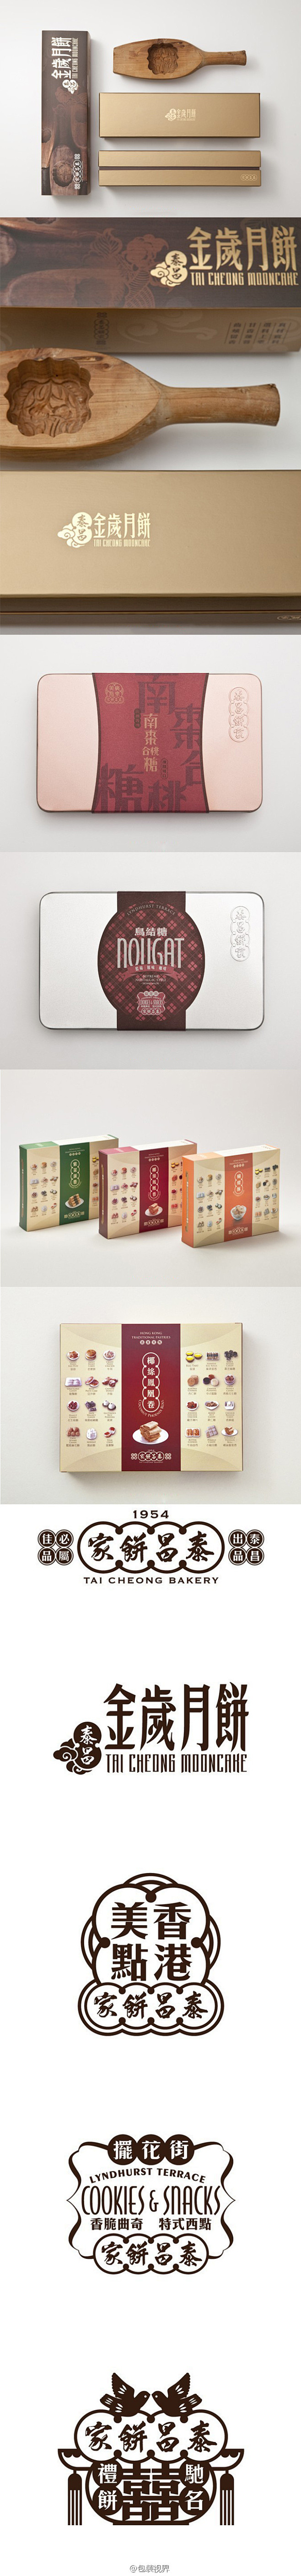 香港泰昌饼家包装设计 | 视觉中国